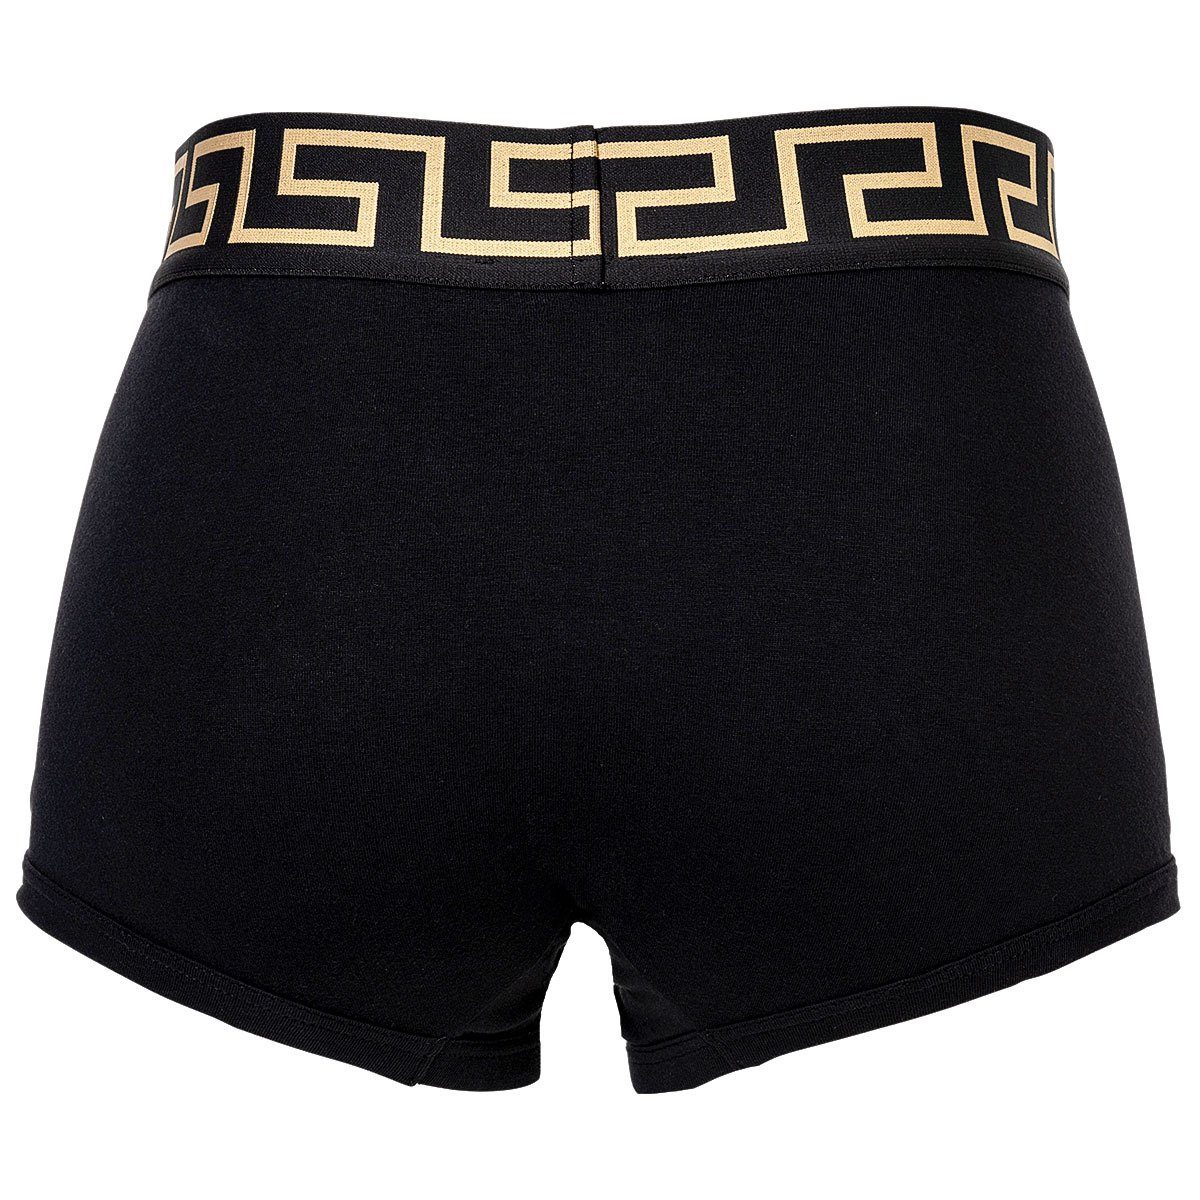 Versace - 3er Boxer Slip Pack Herren Schwarz/Grau/Weiß Baumwolle Shorts, TOPEKA,